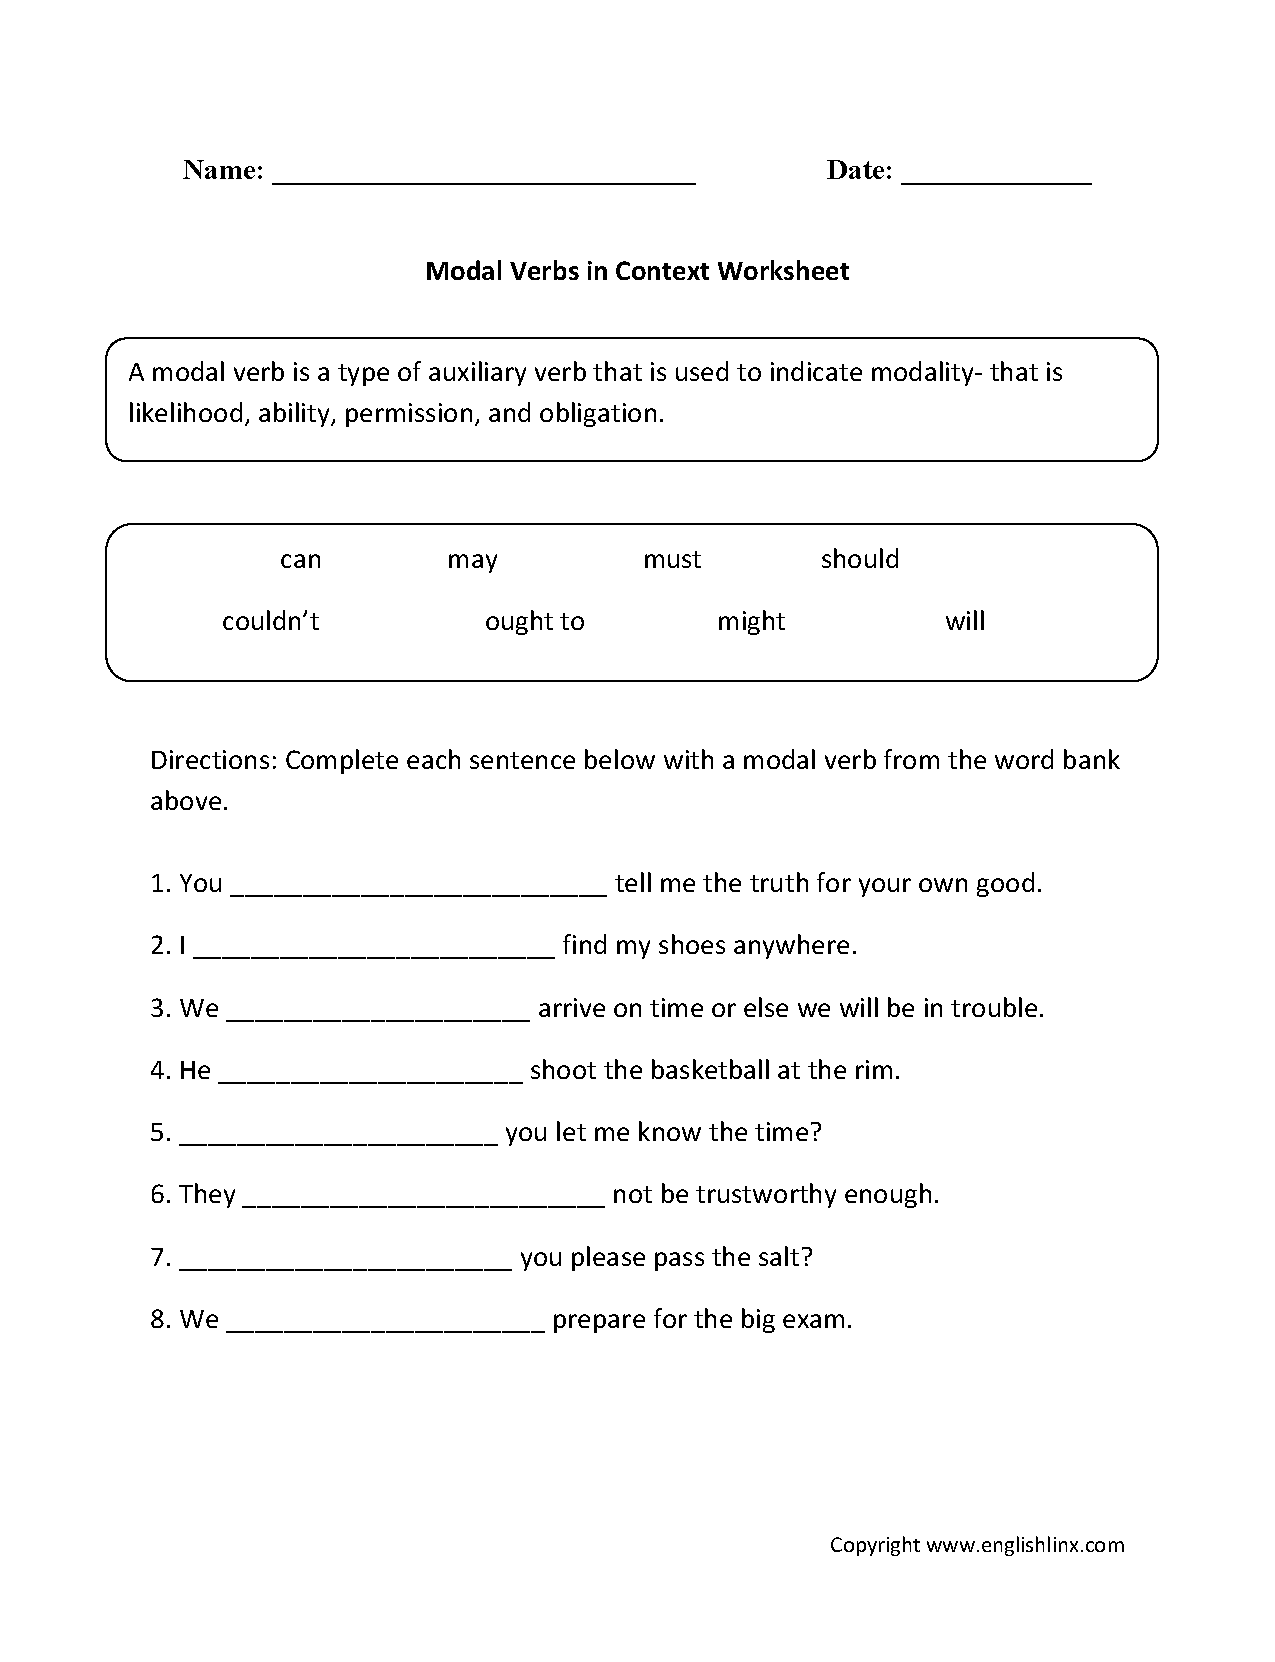 actios-verbs-worksheet